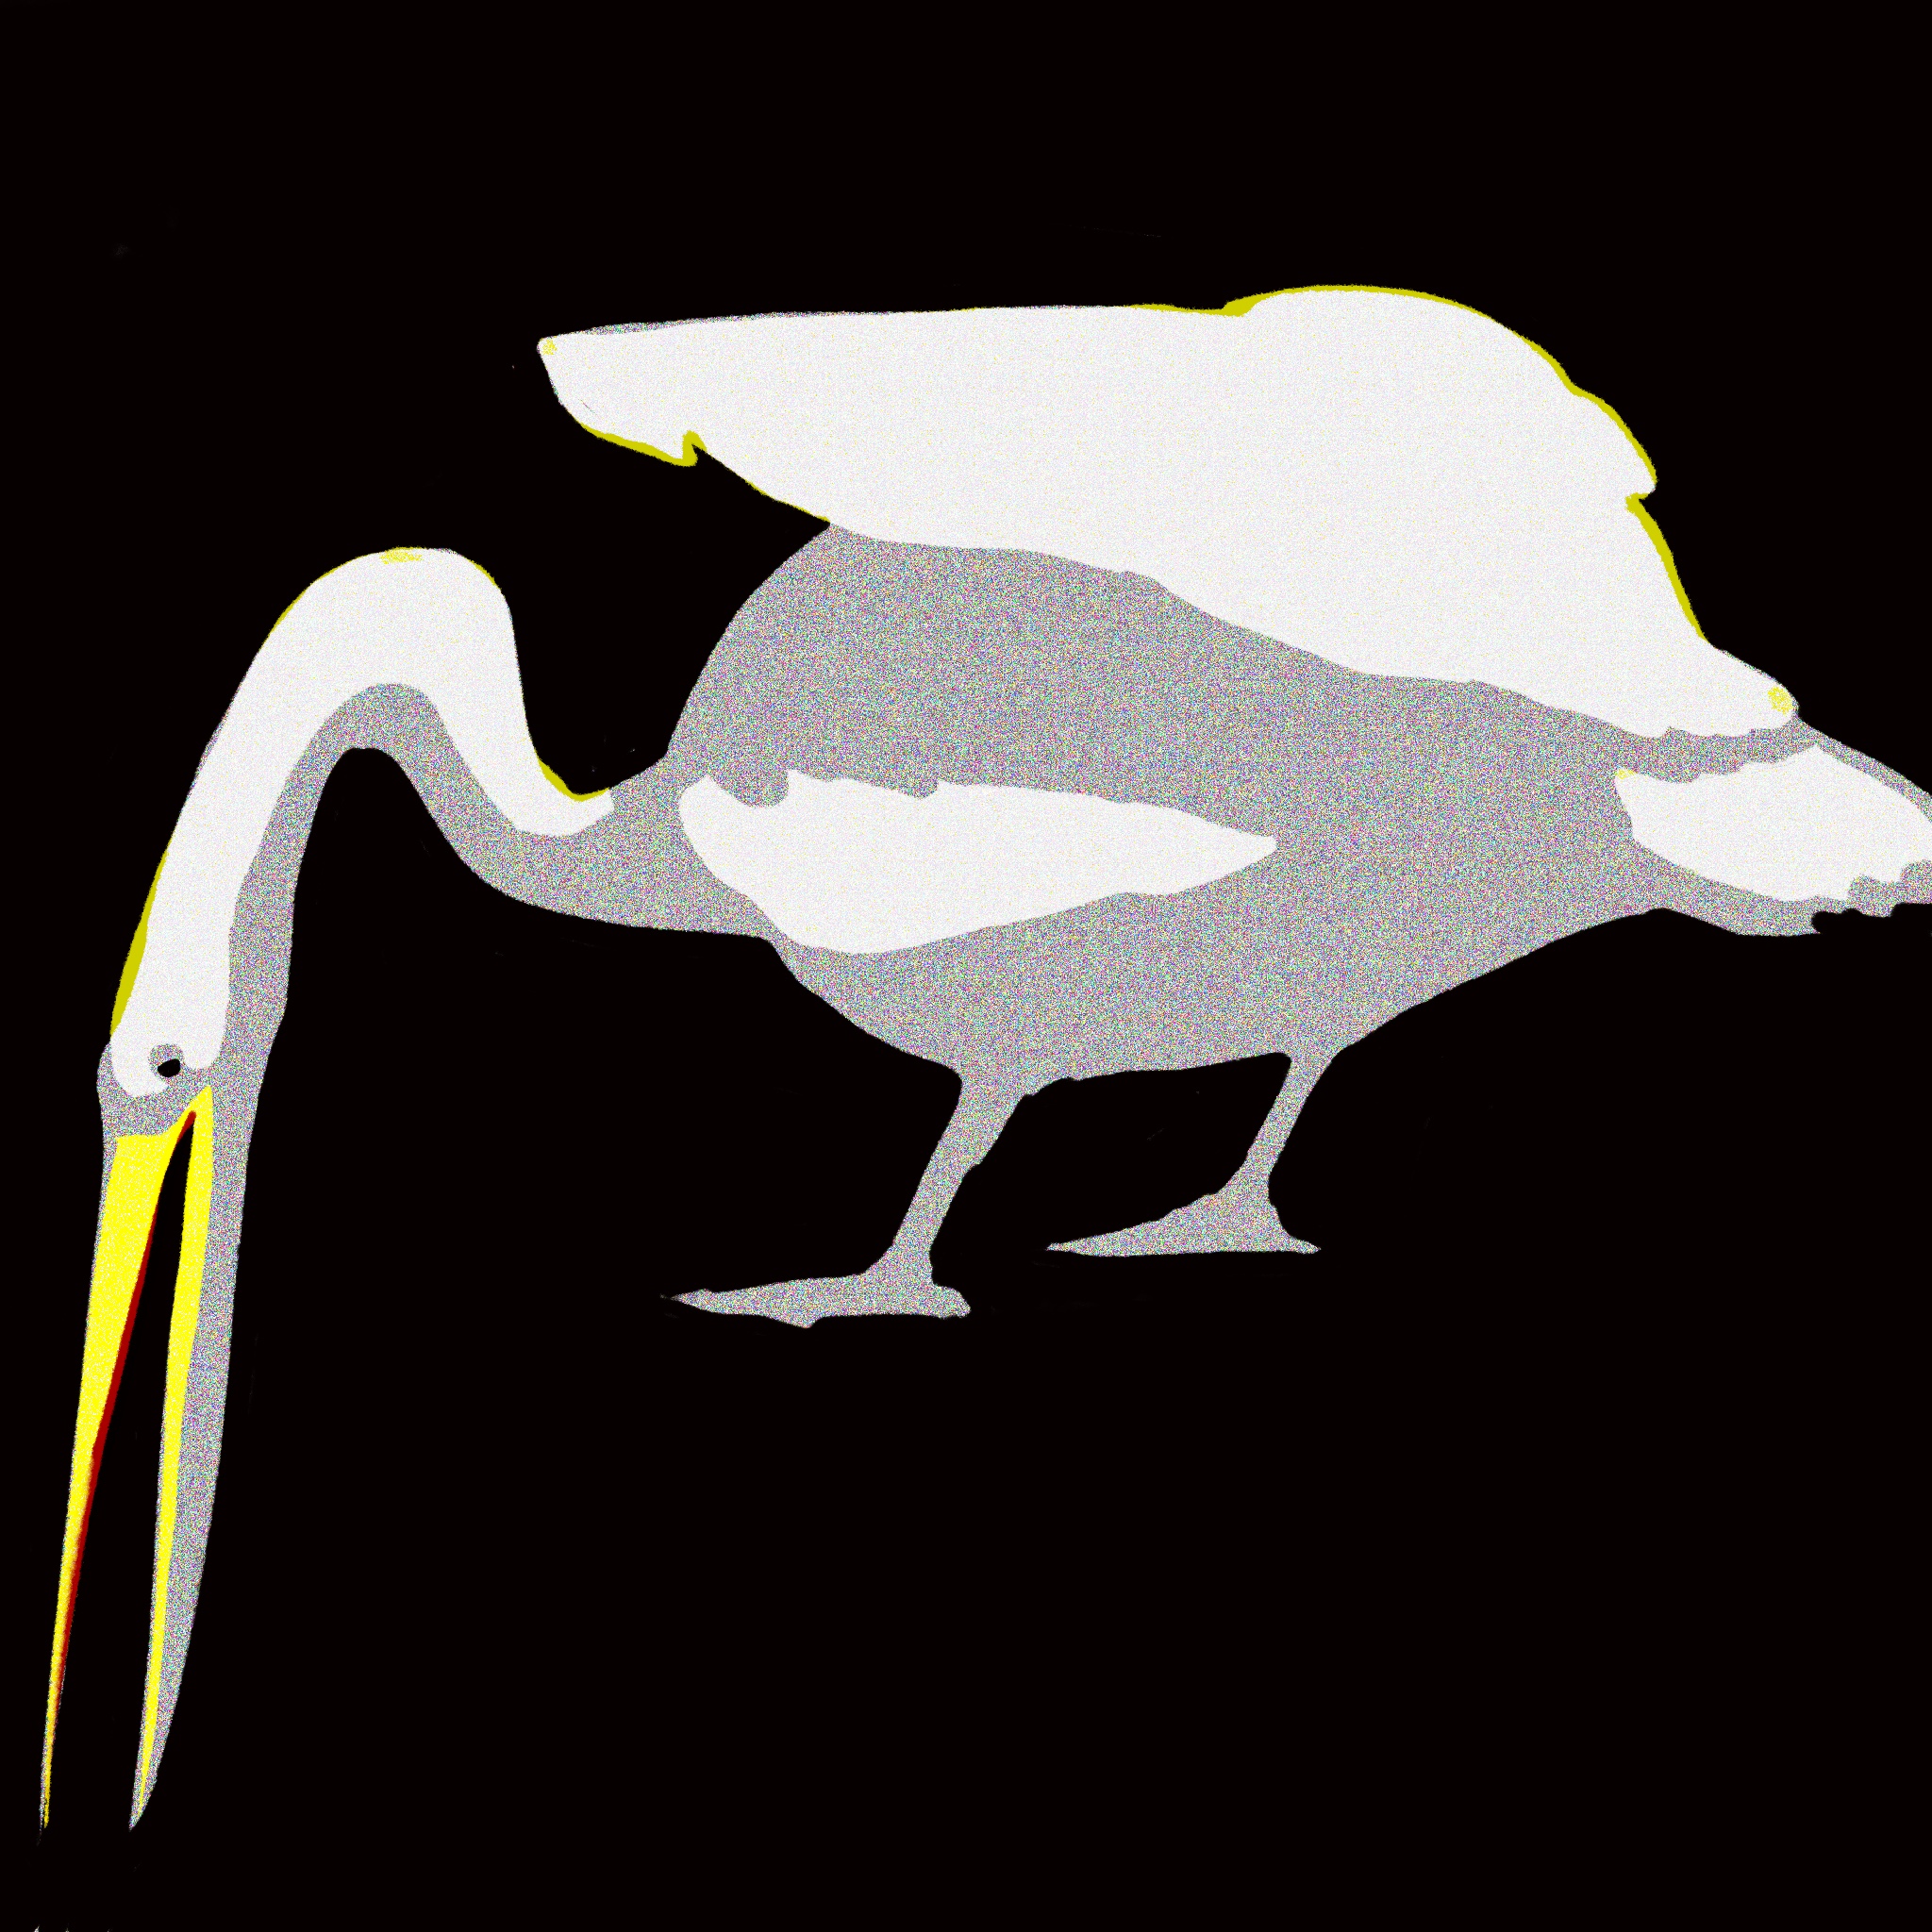 pelican01